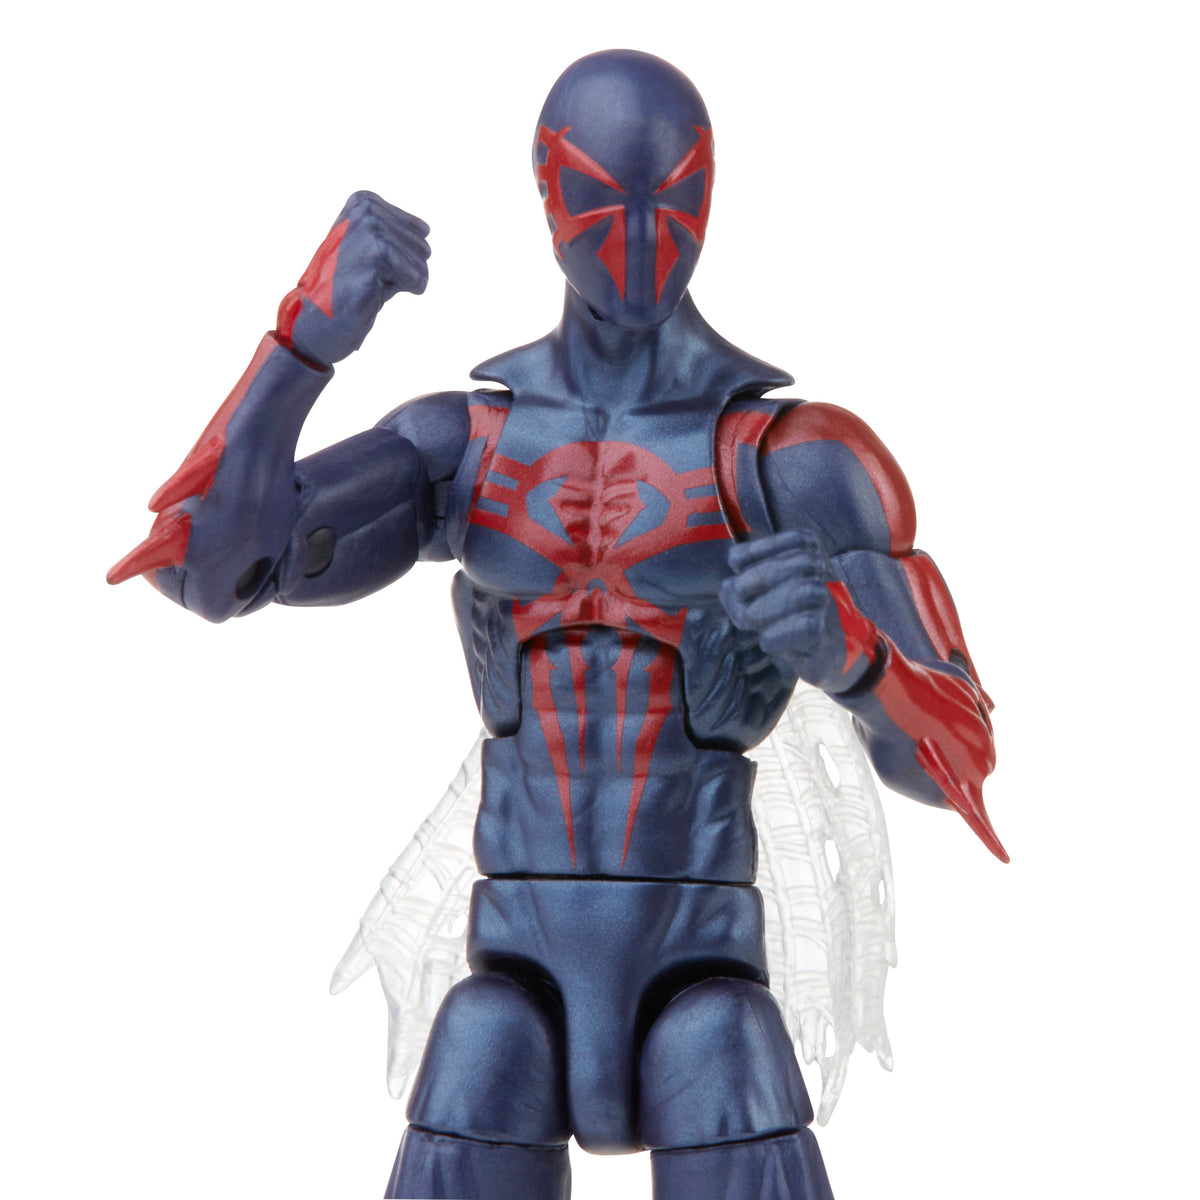 Scarlet Spider Action Figure Marvel Legends  Marvel Legends Scarlet Spider  Man - Action Figures - Aliexpress